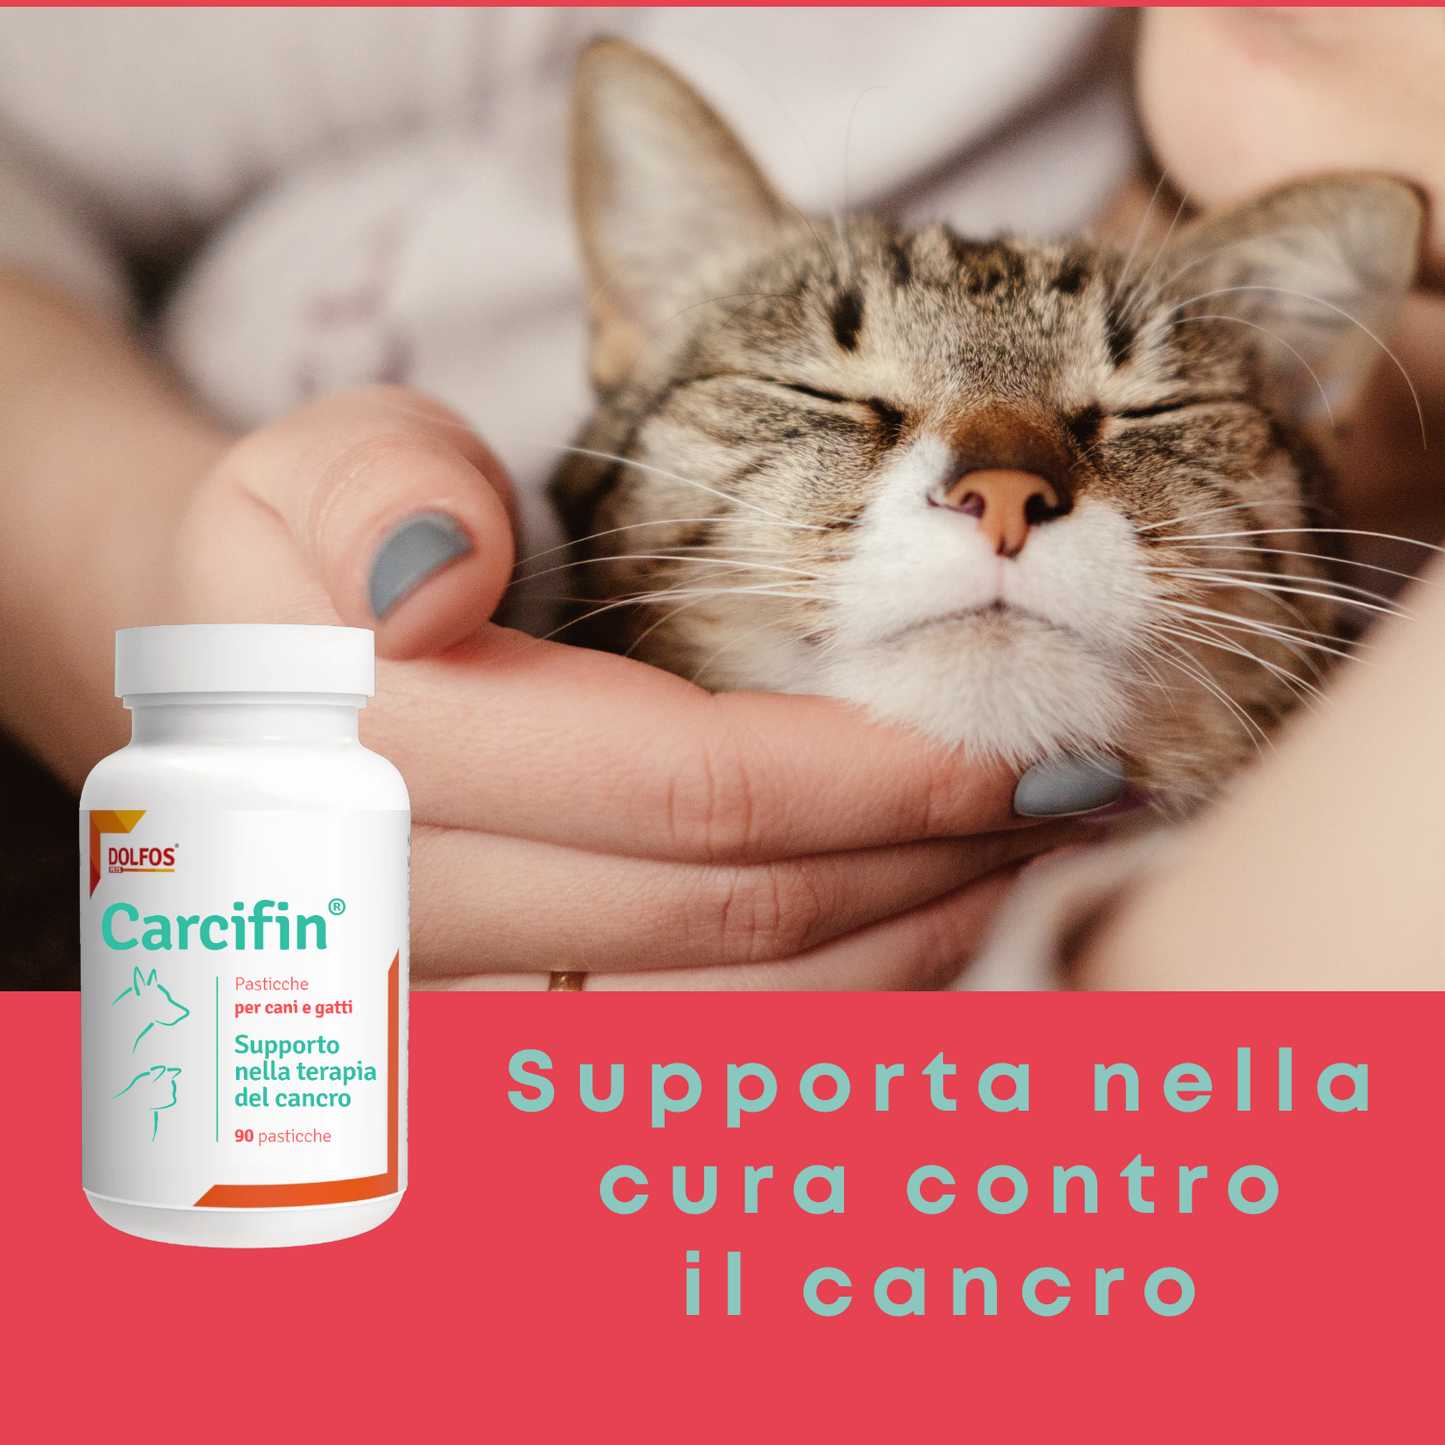 Carcifin 90 - Supporto nella terapia del cancro